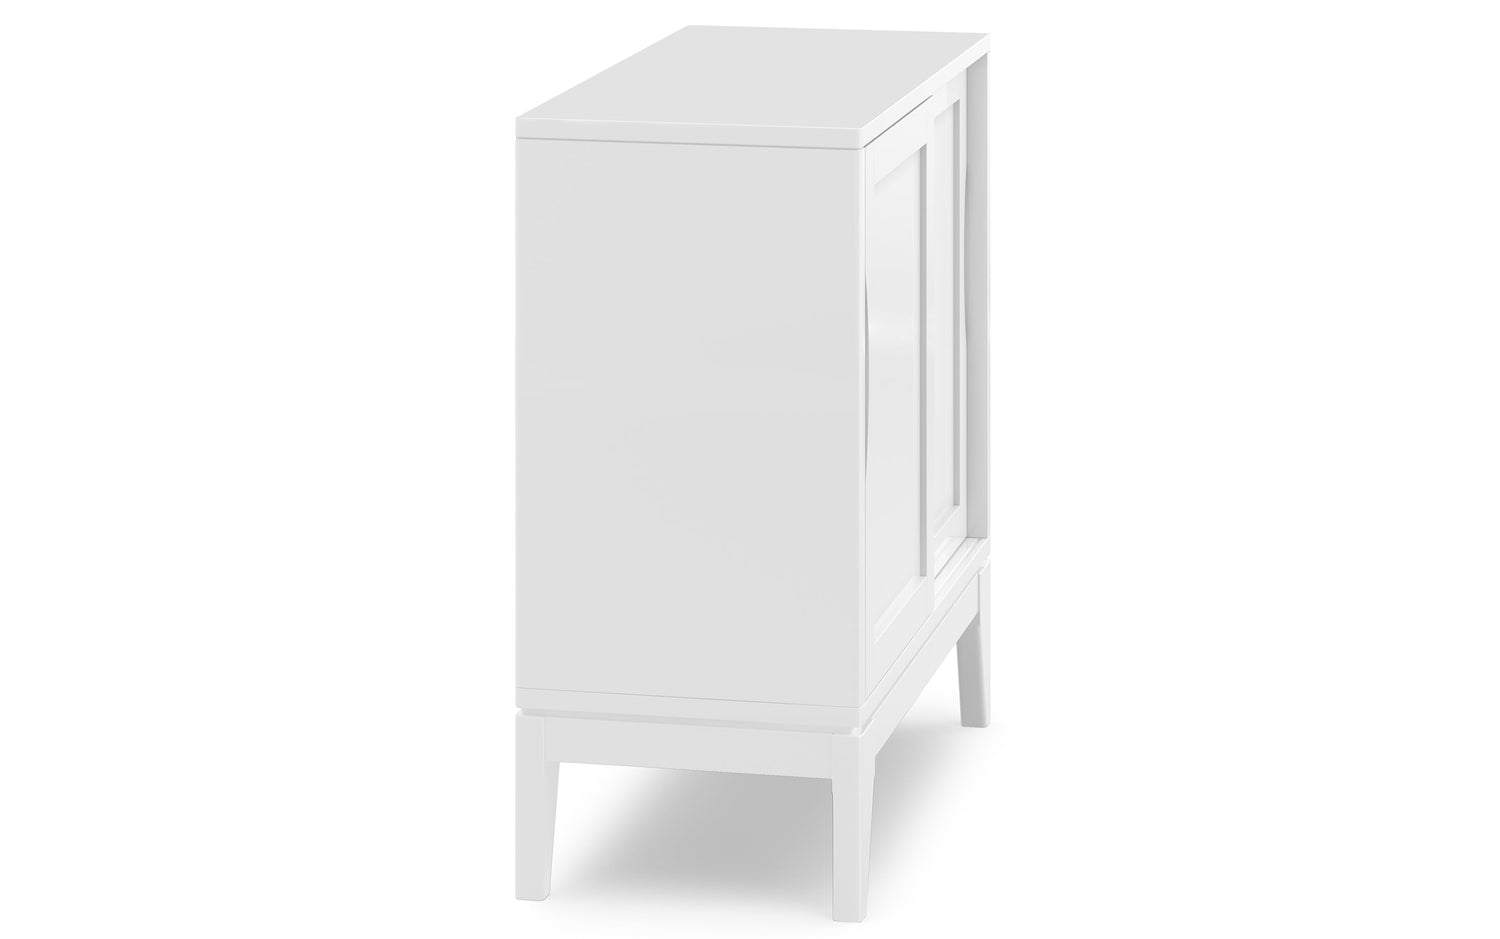 White | Harper 30 inch Low Storage Cabinet